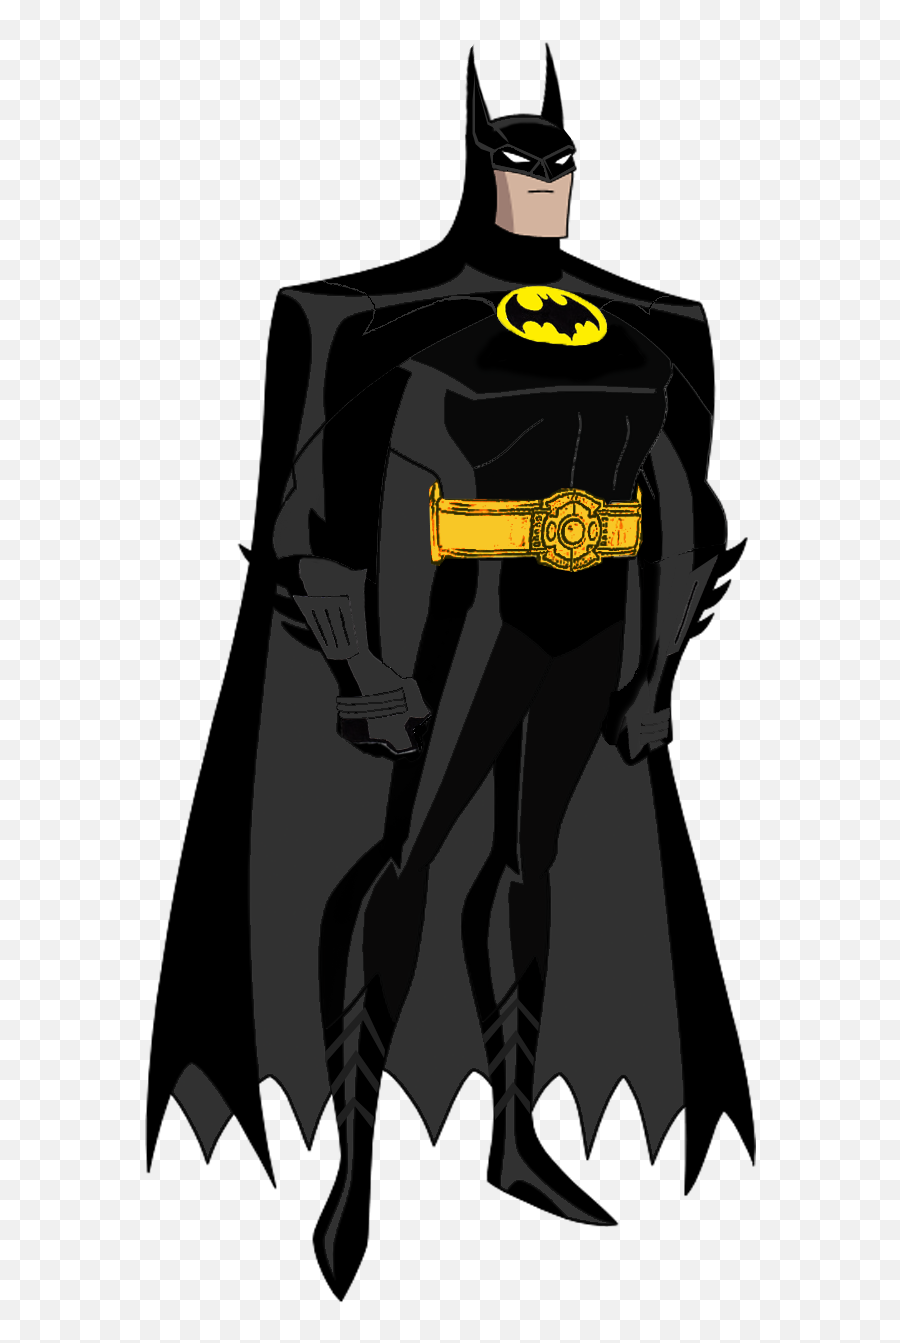 Download Batman Png Image For Free - Cartoon Justice League Batman,Batman Png